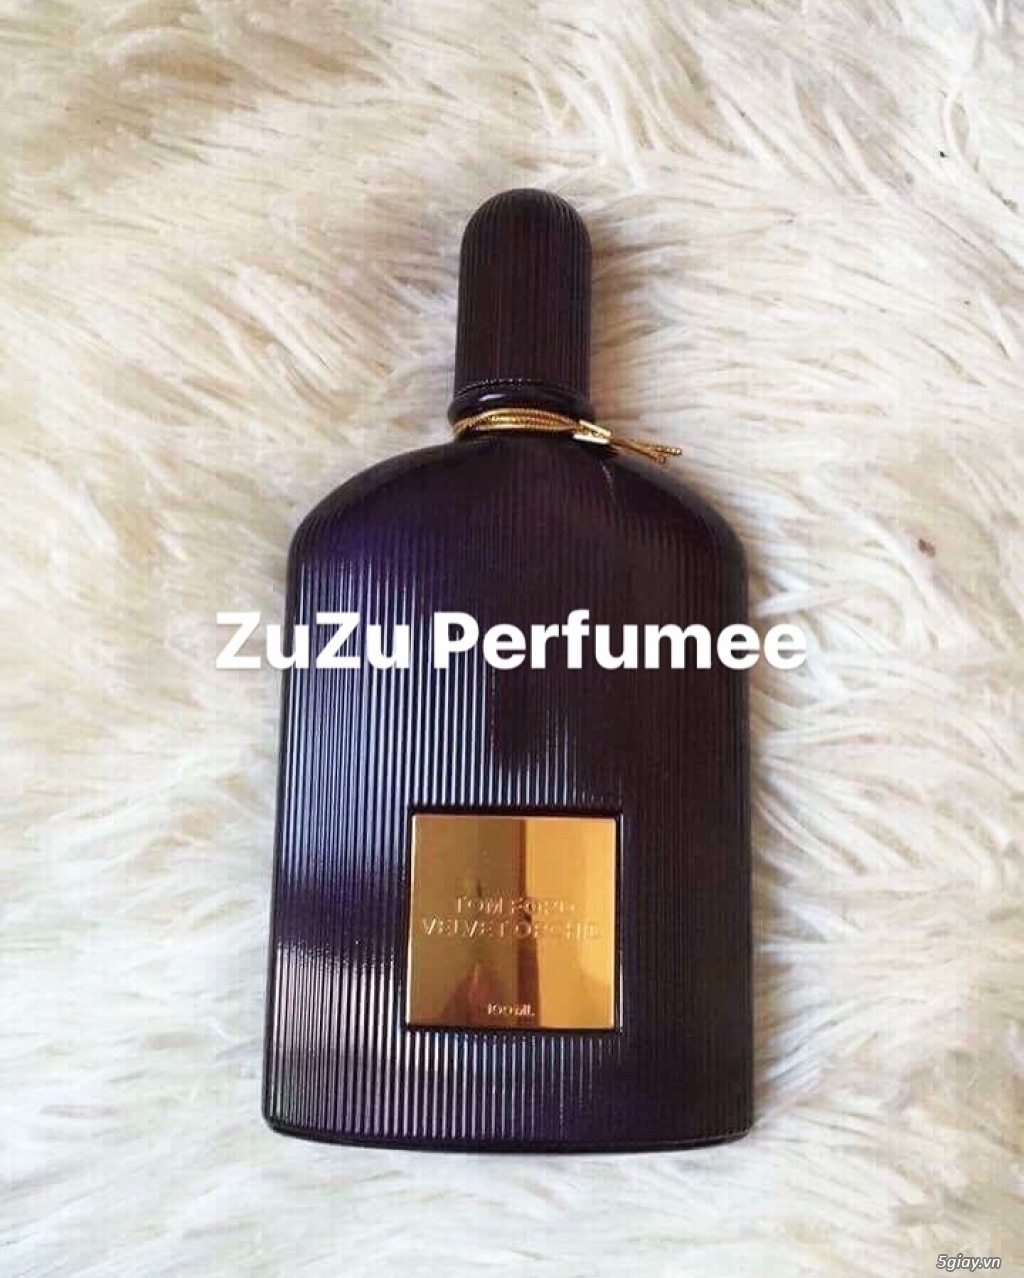 ZuZu Perfumee Store - 3